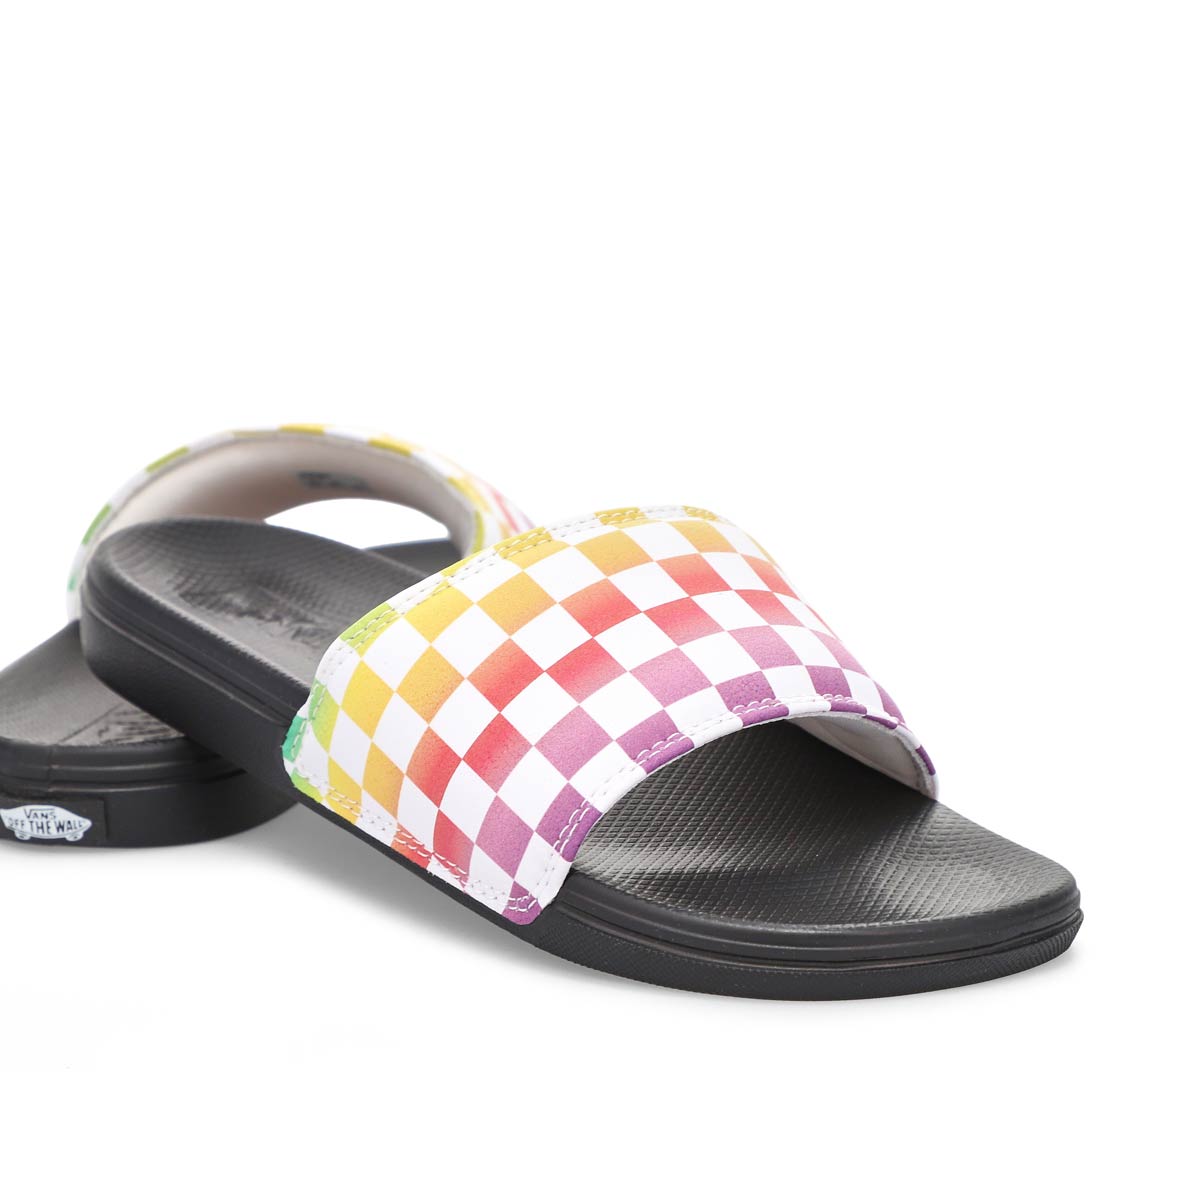 Vans Women's Range Slide-On Slide Sandals - M | SoftMoc.com